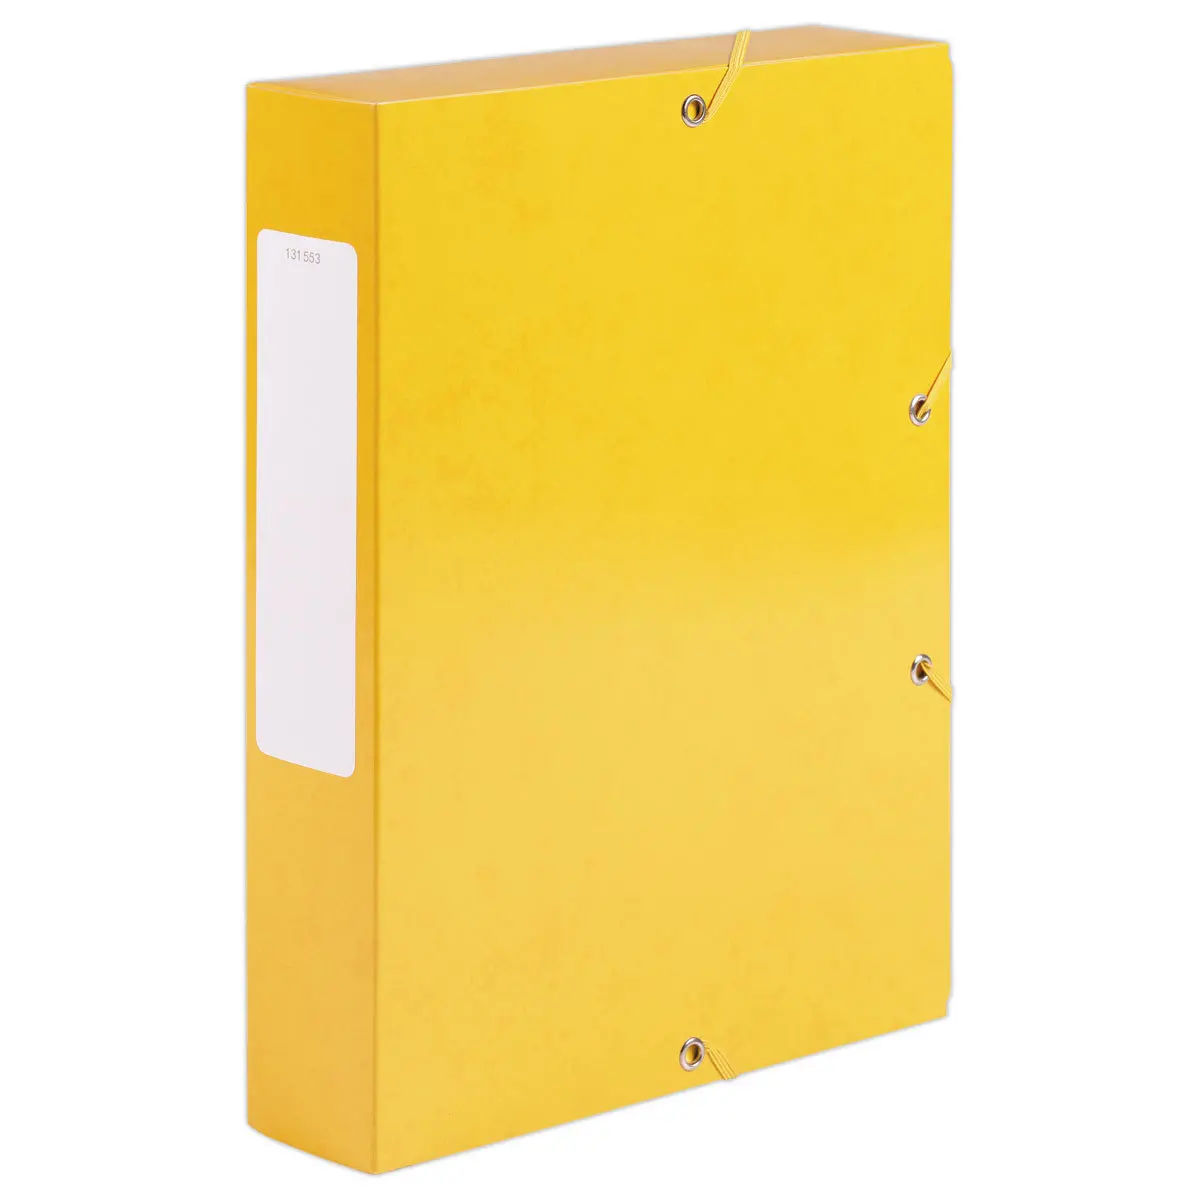 Boîte de classement carte  - Dos 6 cm jaune photo du produit